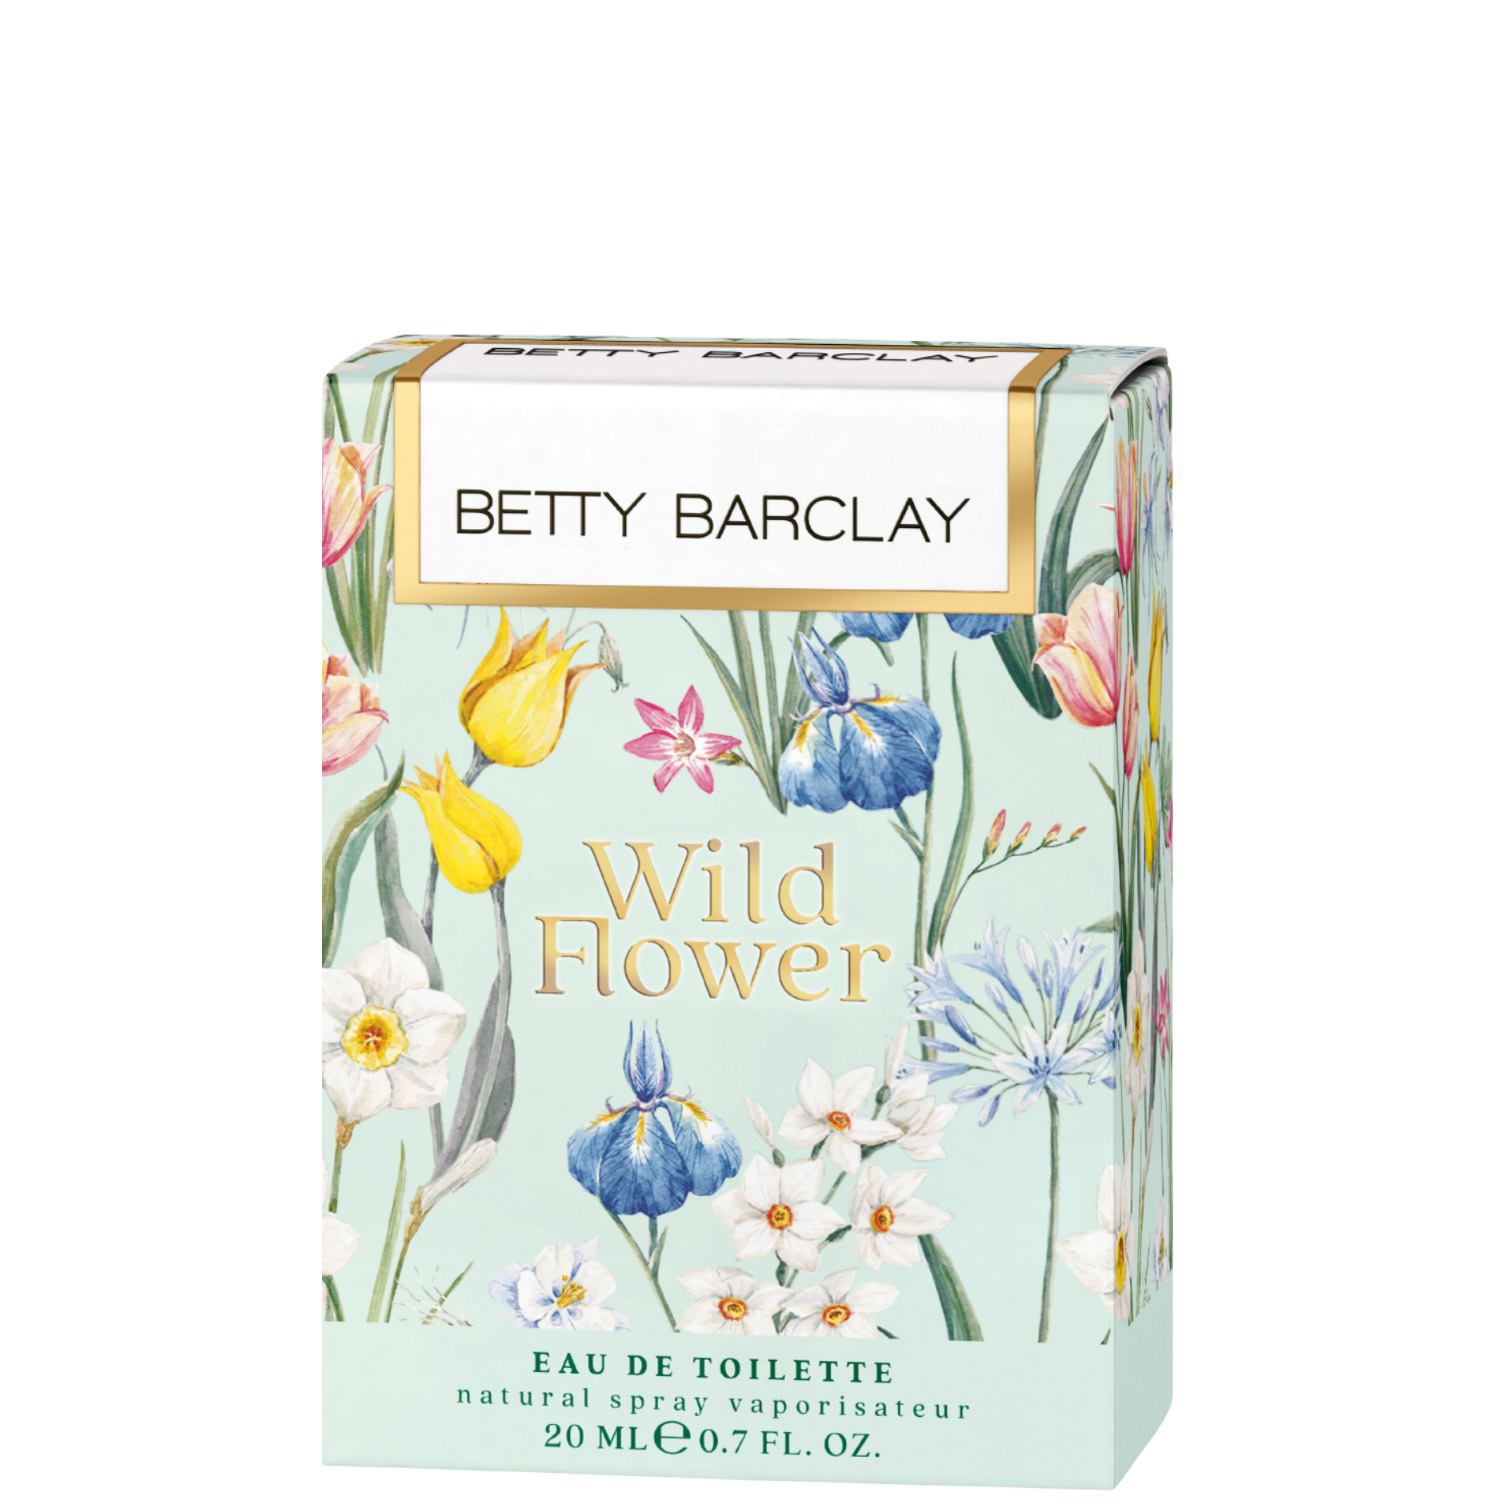 Betty Barclay Wild Flower Eau de Toilette 20ml